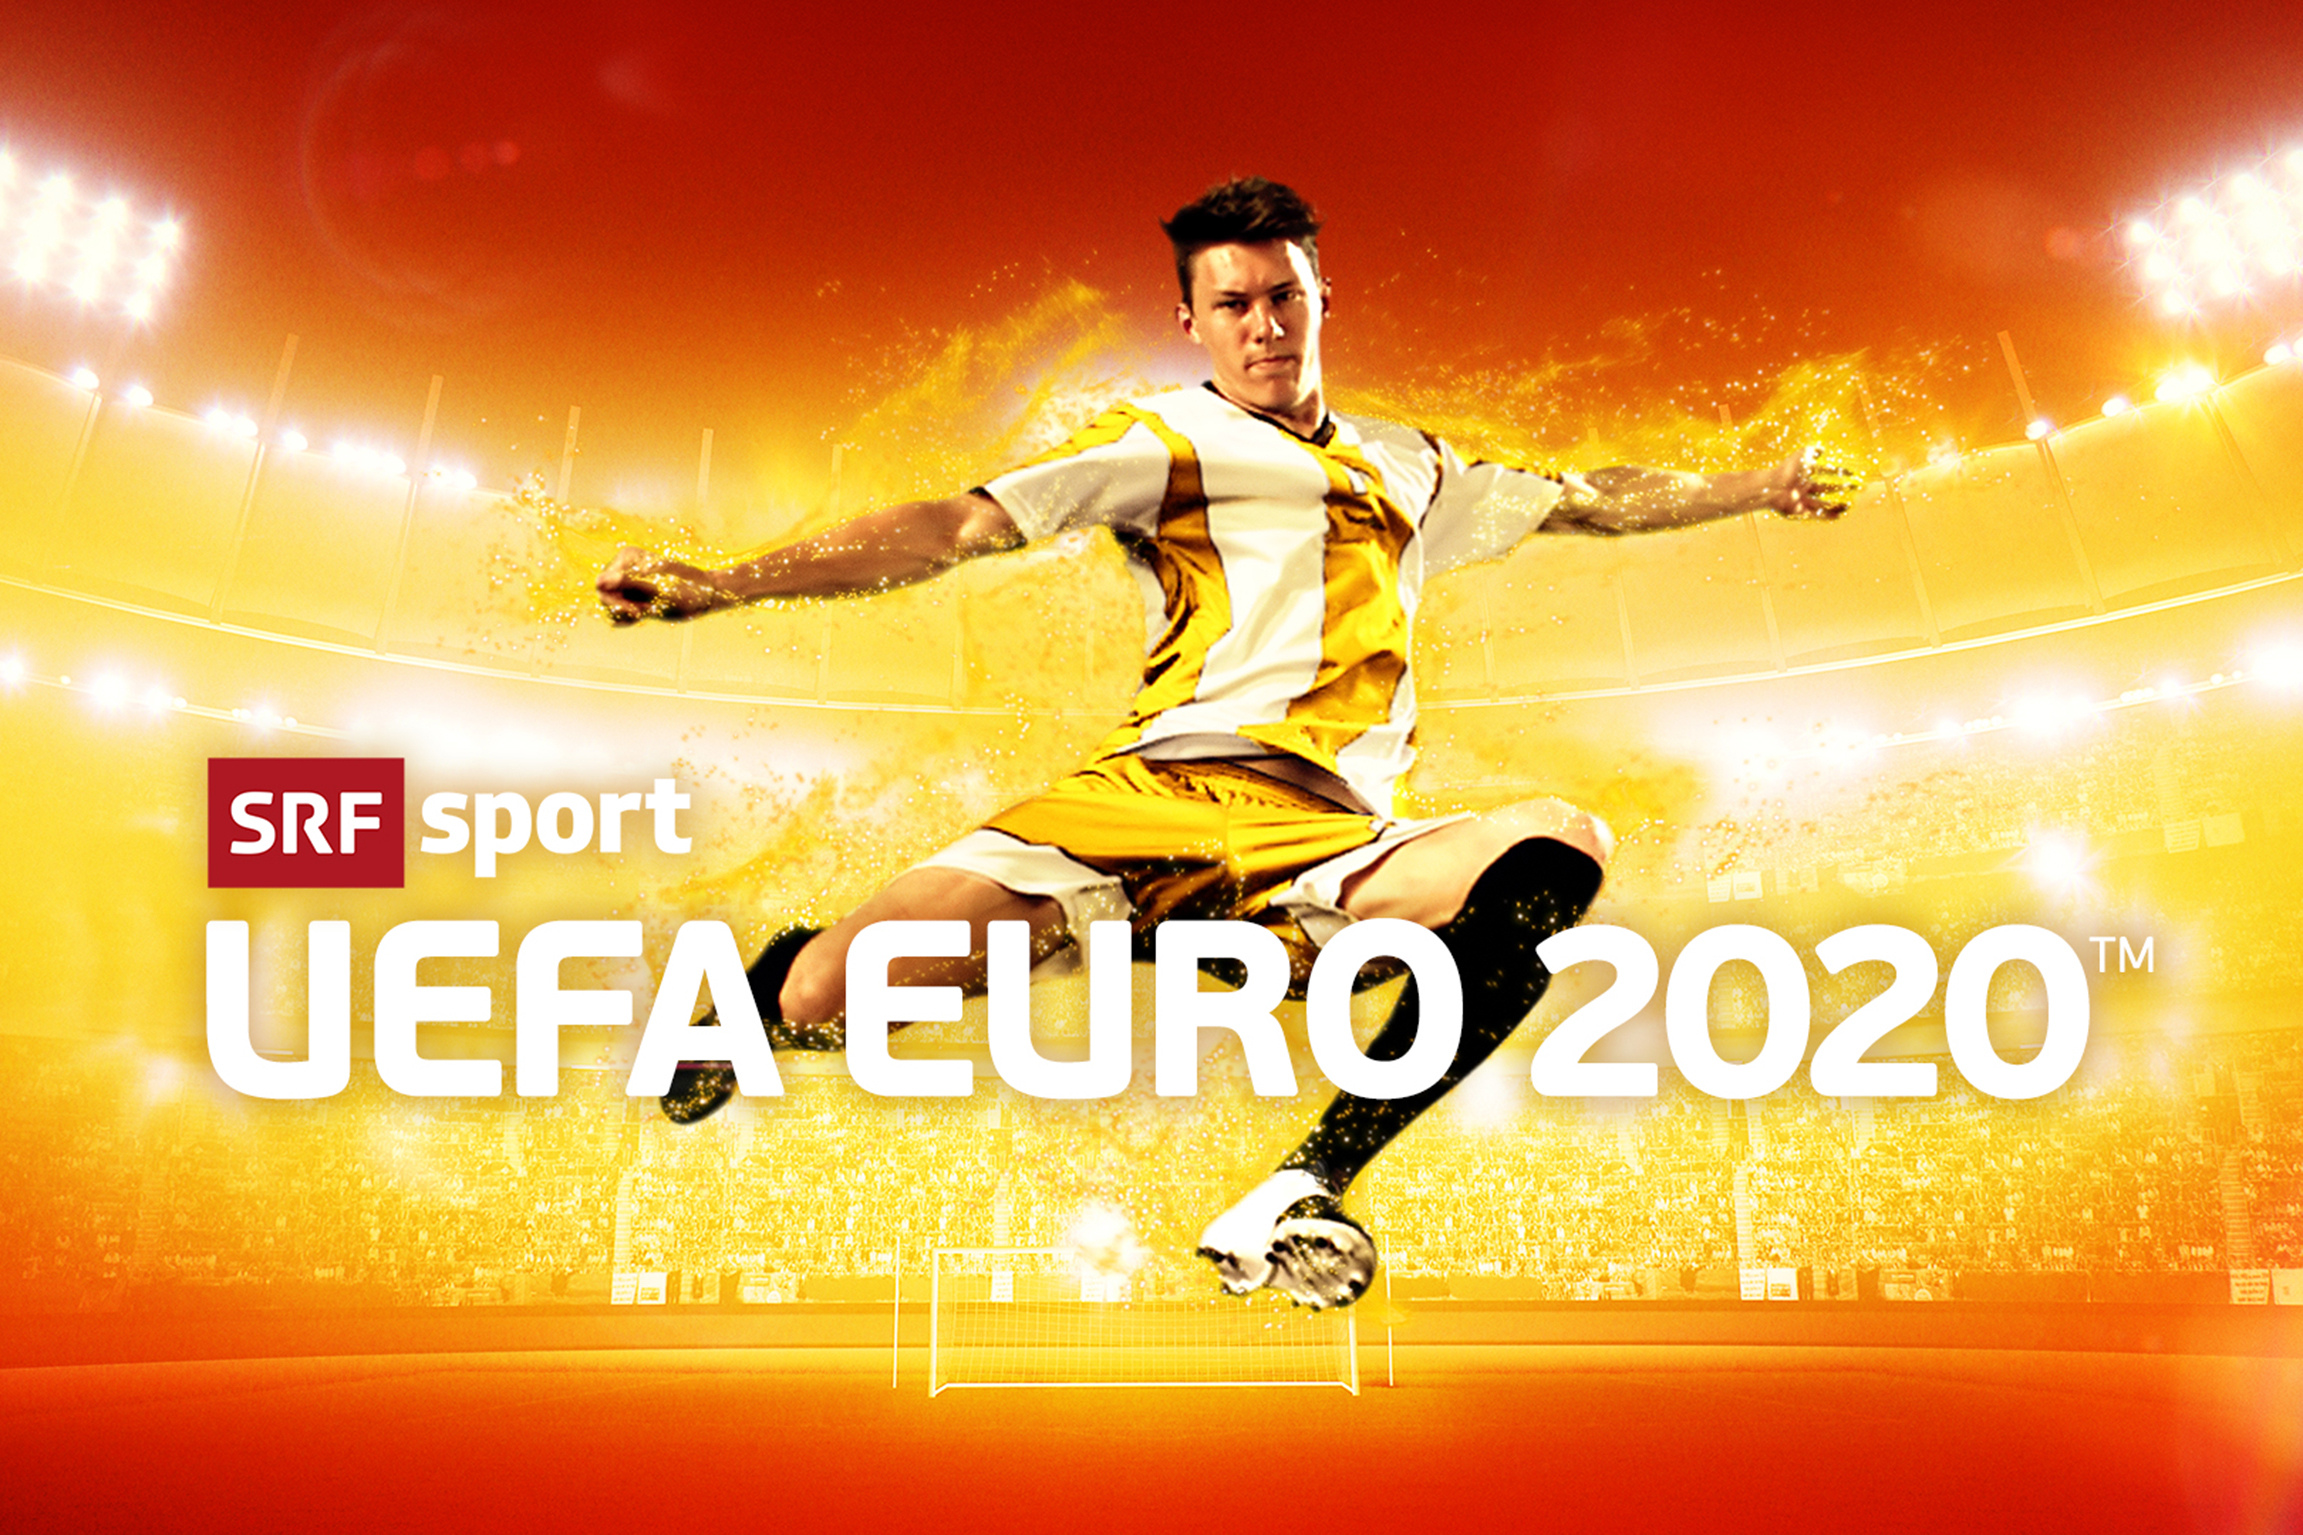 Neun von zehn Fussballfans verfolgten die UEFA EURO 2020 auf SRF zwei - Medienportal